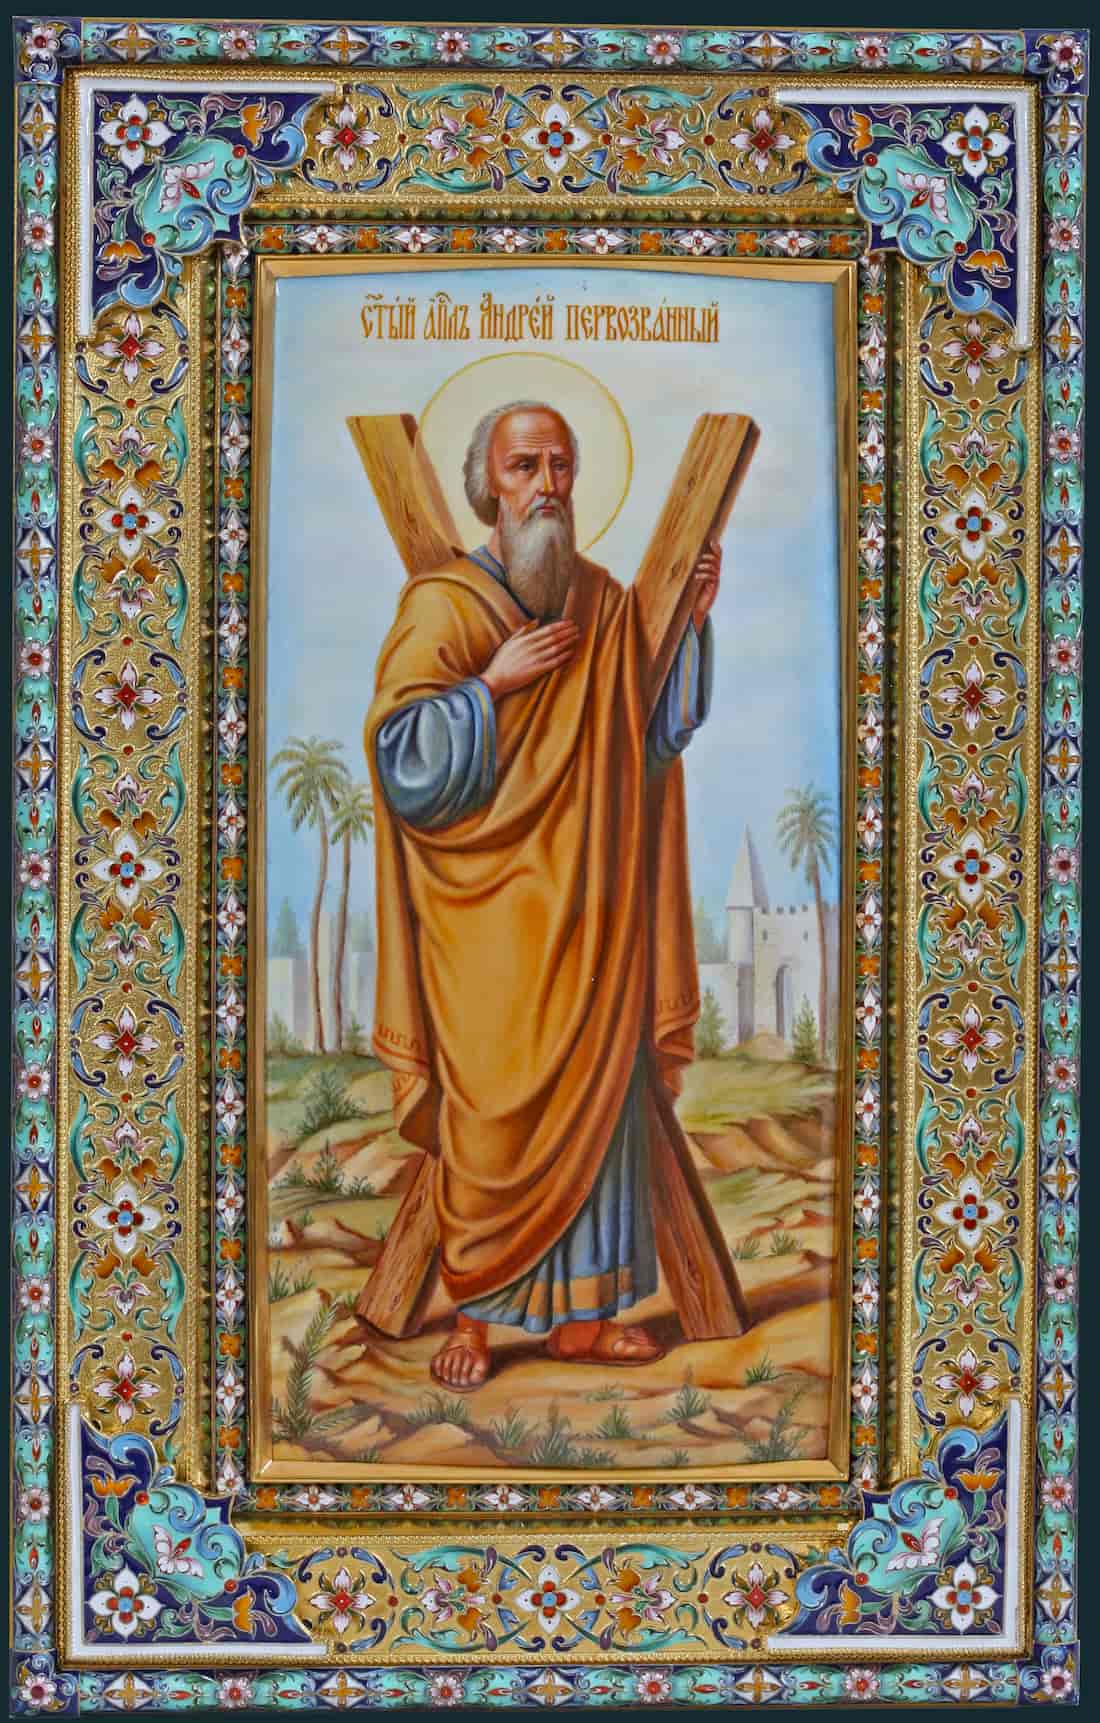 Апостол Андрей Первозванный